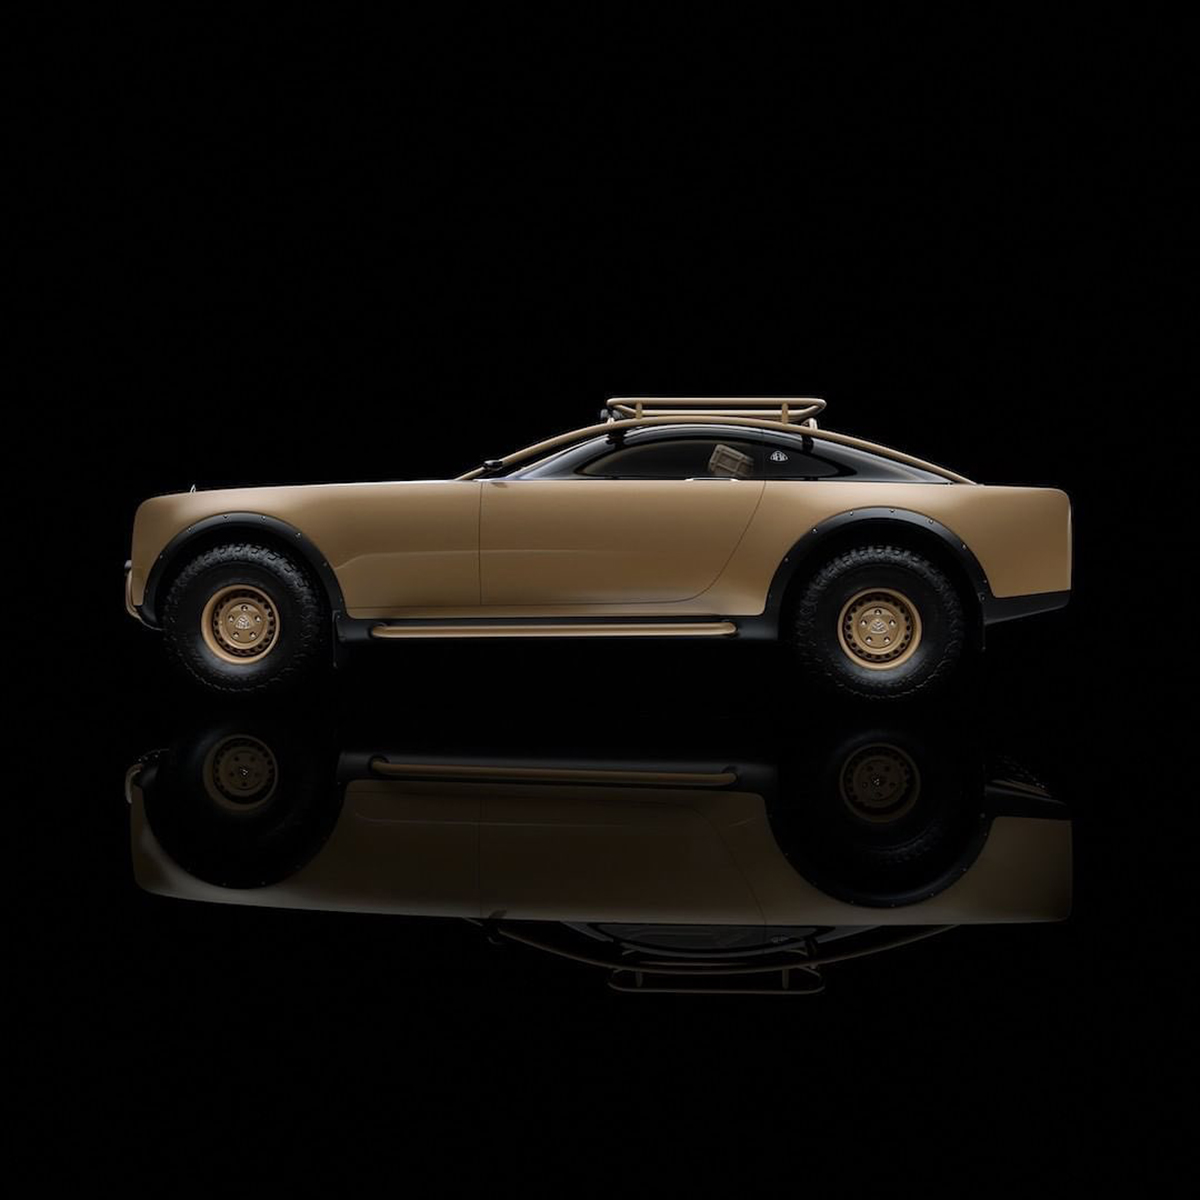 Mercedes-Maybach : l’ultime concept-car futuriste et solaire de Virgil Abloh ! (vidéo sur Bidfoly.com) Par Justine Mellado Maybach-mercedes-benz-virgil-abloh-2